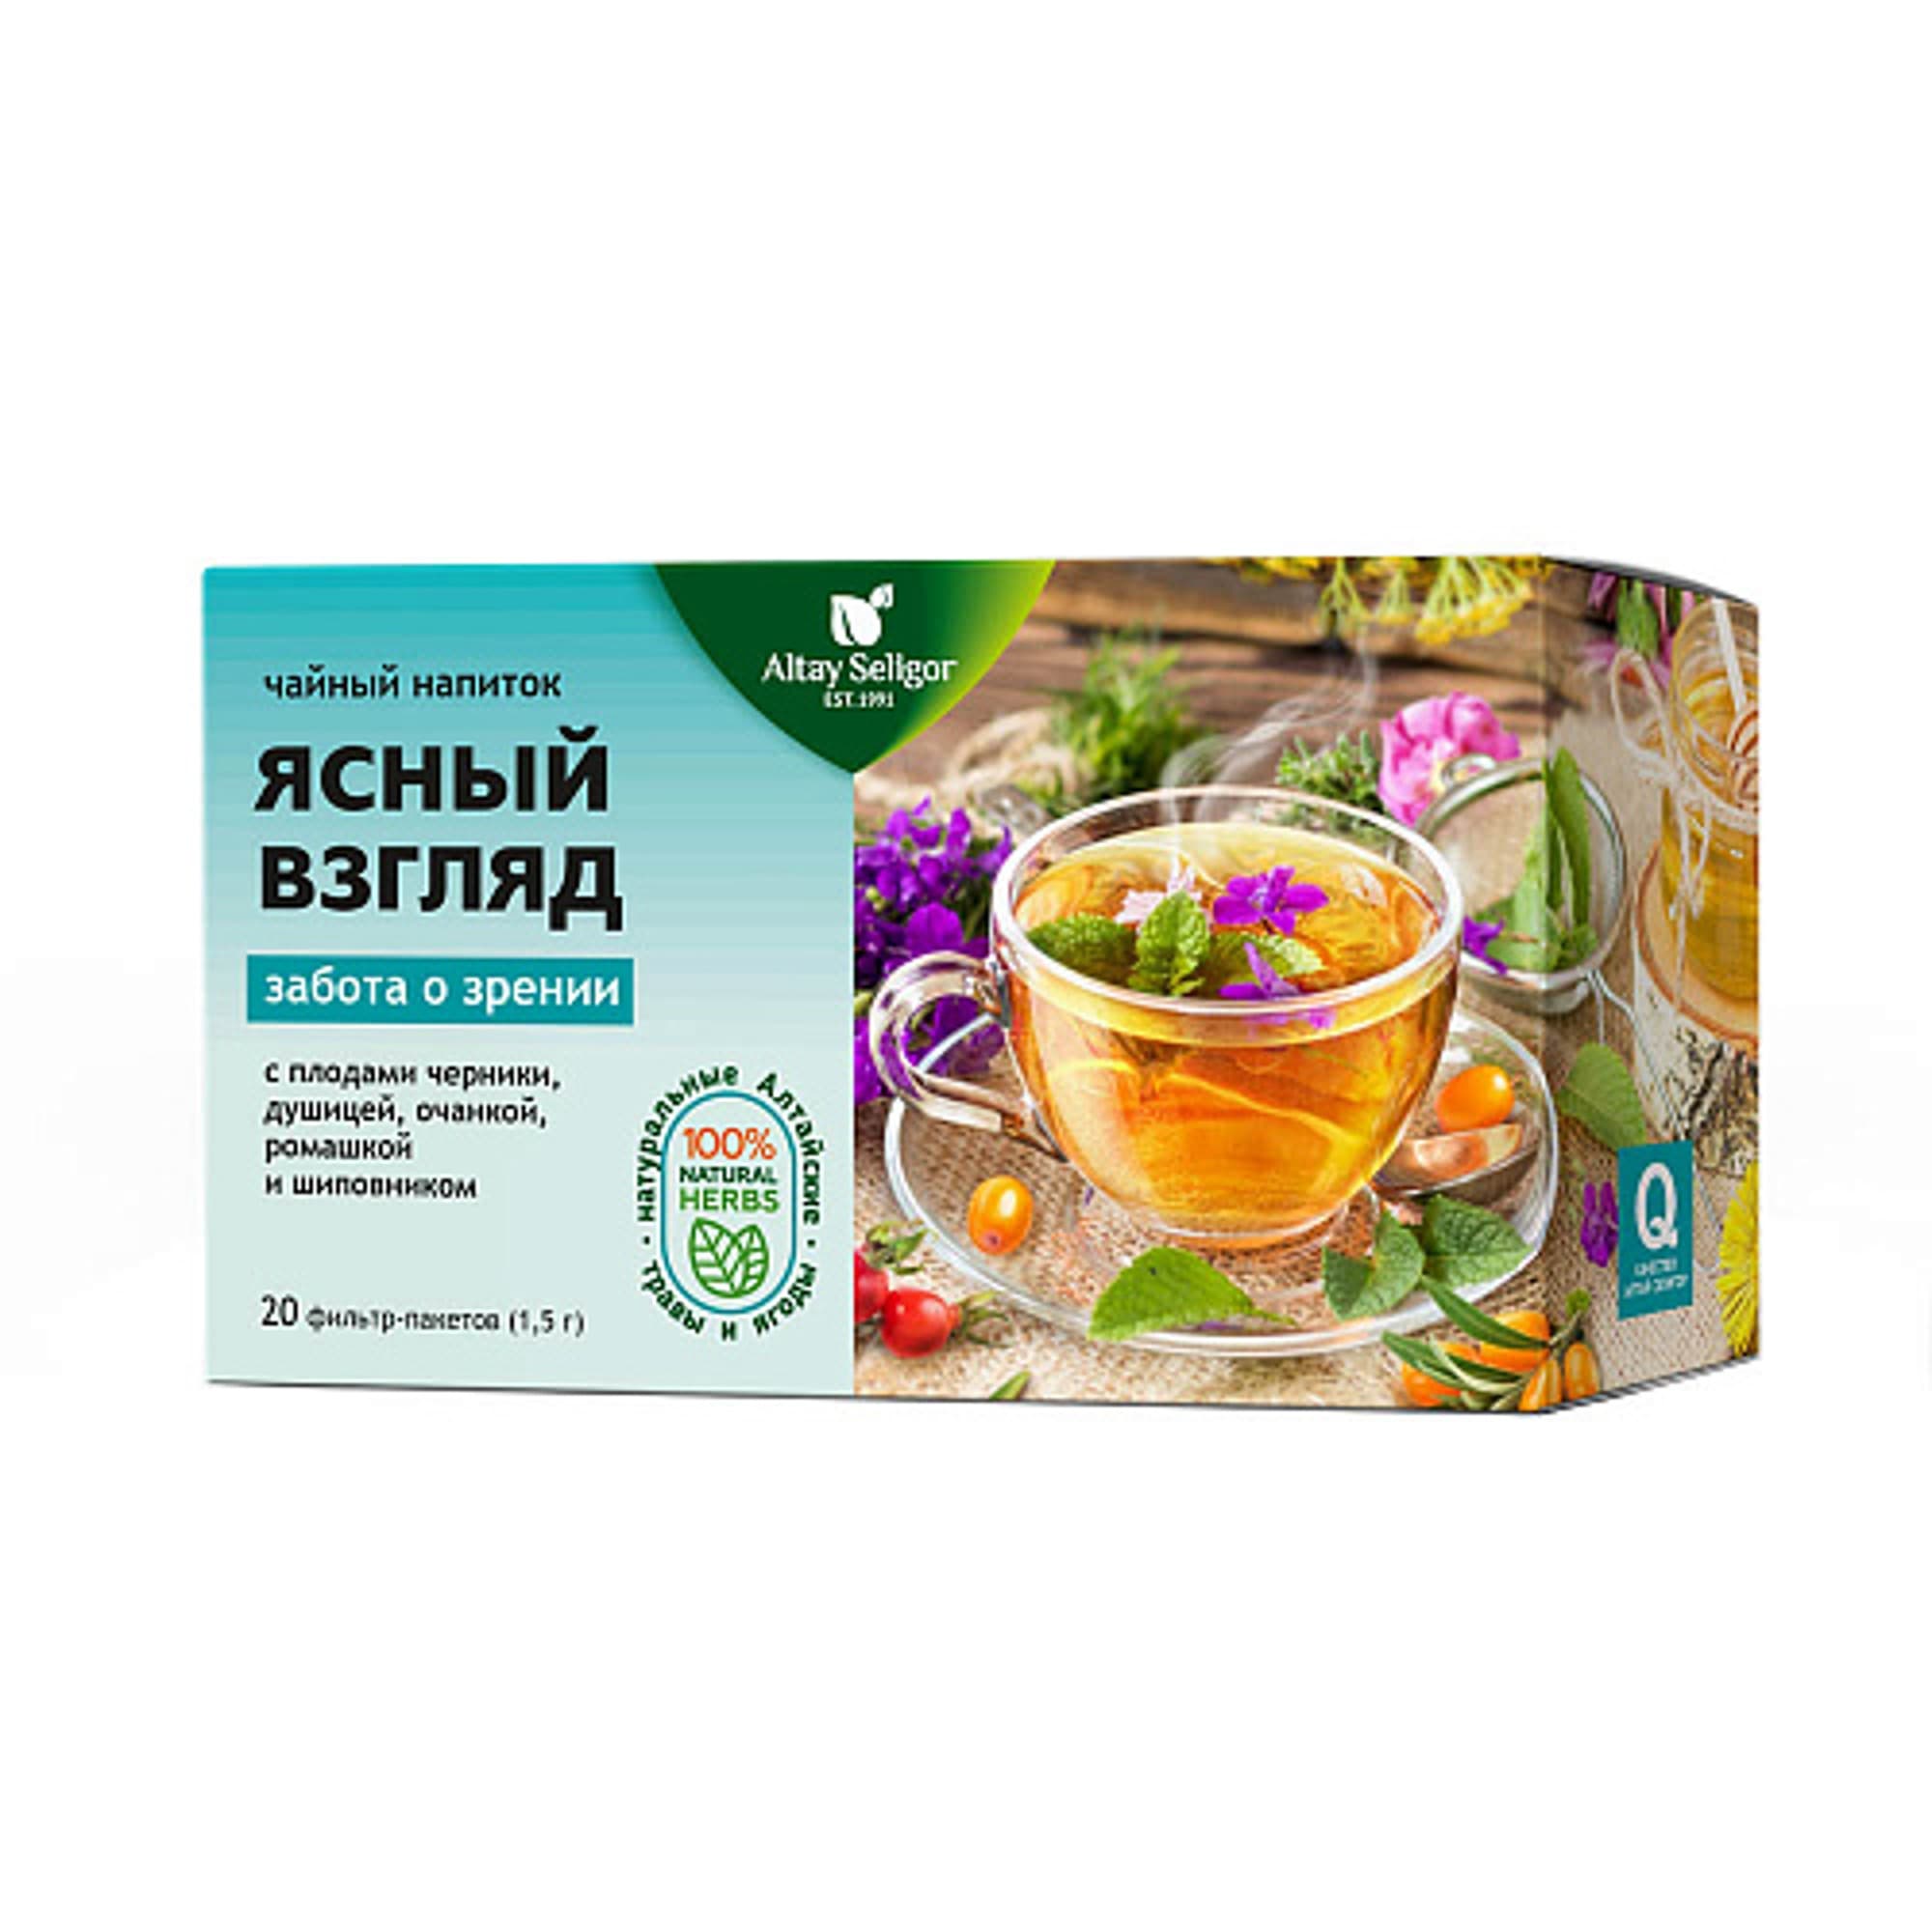 Напиток  чайный Altay Seligor  Ясный взгляд фильтр-пакеты 20 шт. х2